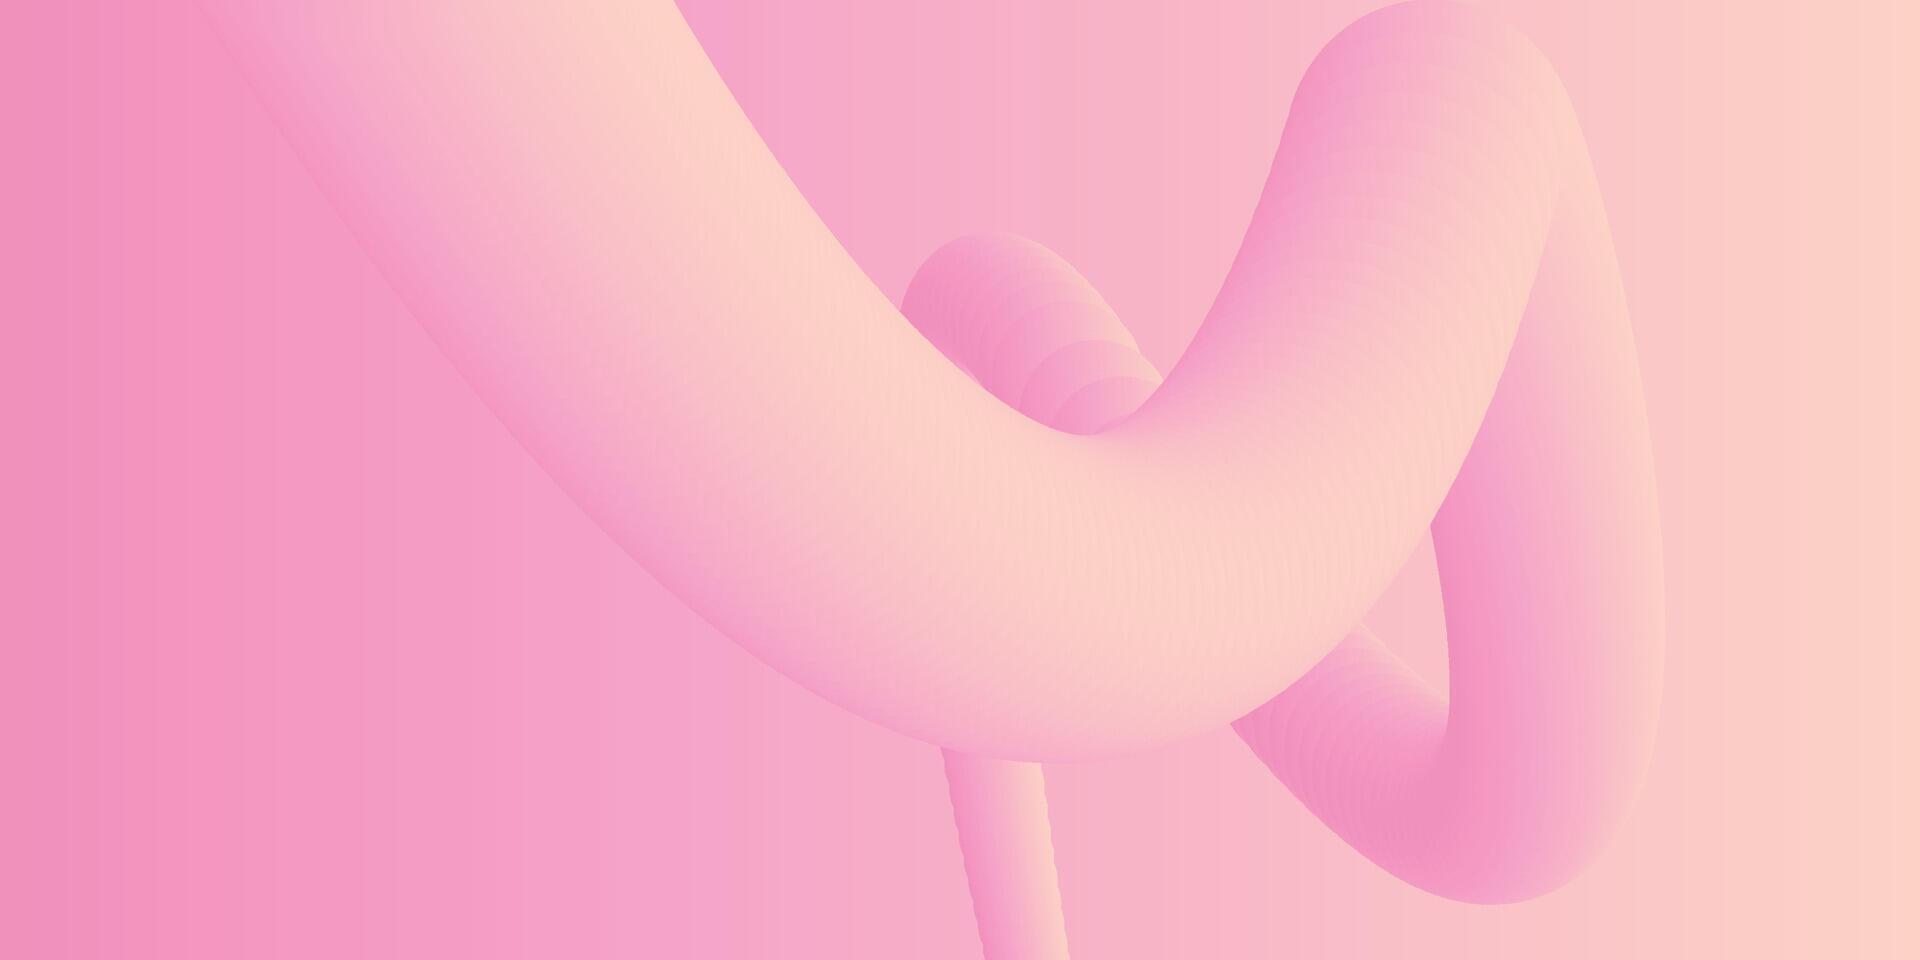 abstrakt 3d Flüssigkeit Flüssigkeit Rosa Farbe Hintergrund. kreativ minimal Kugel Bälle oder Blase modisch bunt Gradient Design zum Startseite Broschüre, Flyer, Poster, Banner Netz. vektor